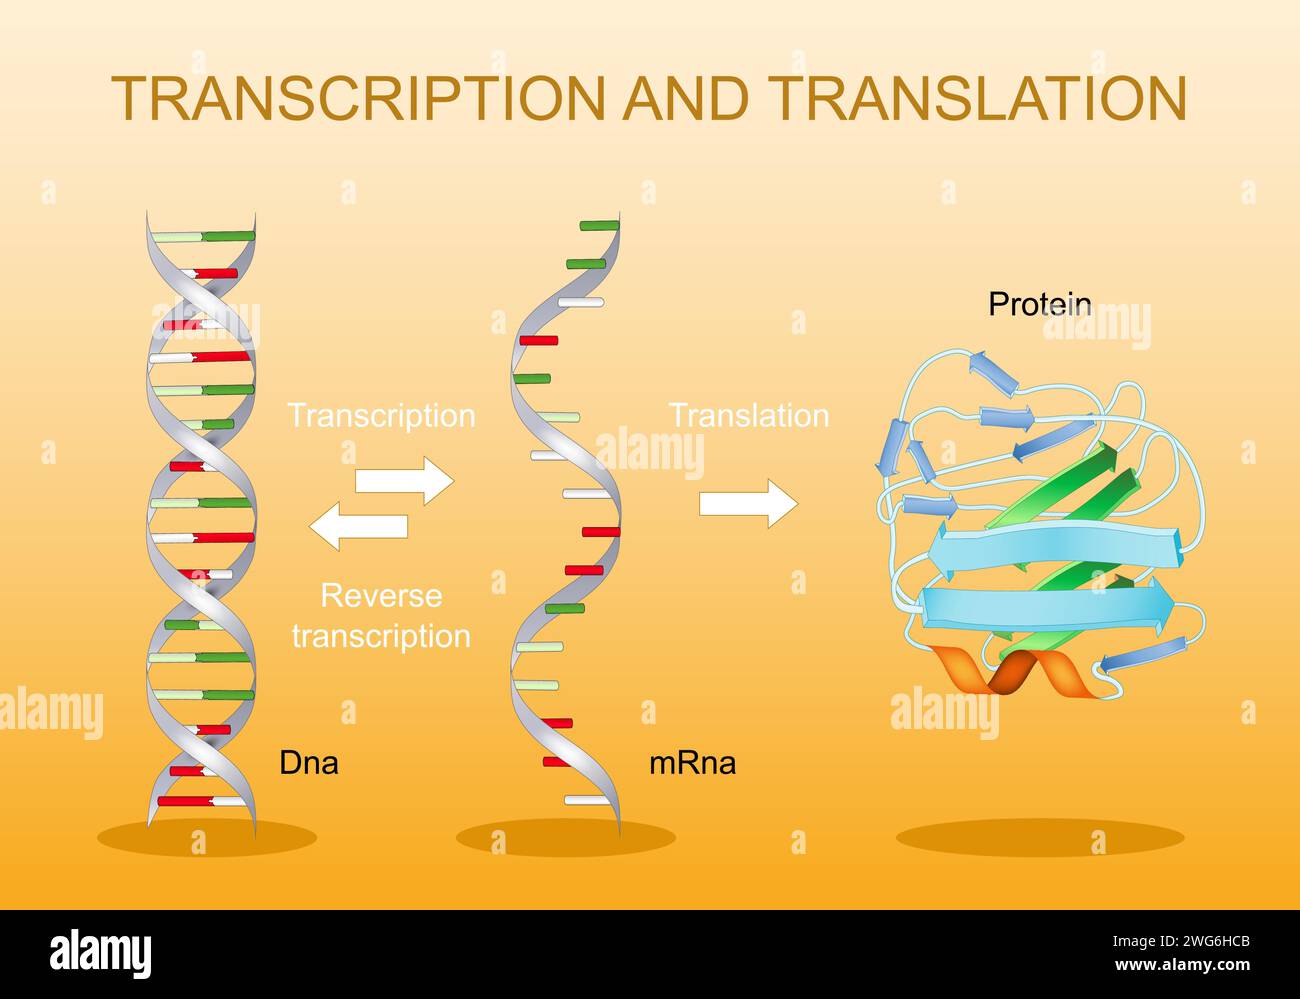 Trascrizione e traduzione. Dal DNA all'mRNA. Sintesi proteica. Codice genetico. Elaborazione RNA. Espressione genica. Diagramma vettoriale. Illustrazione Vettoriale